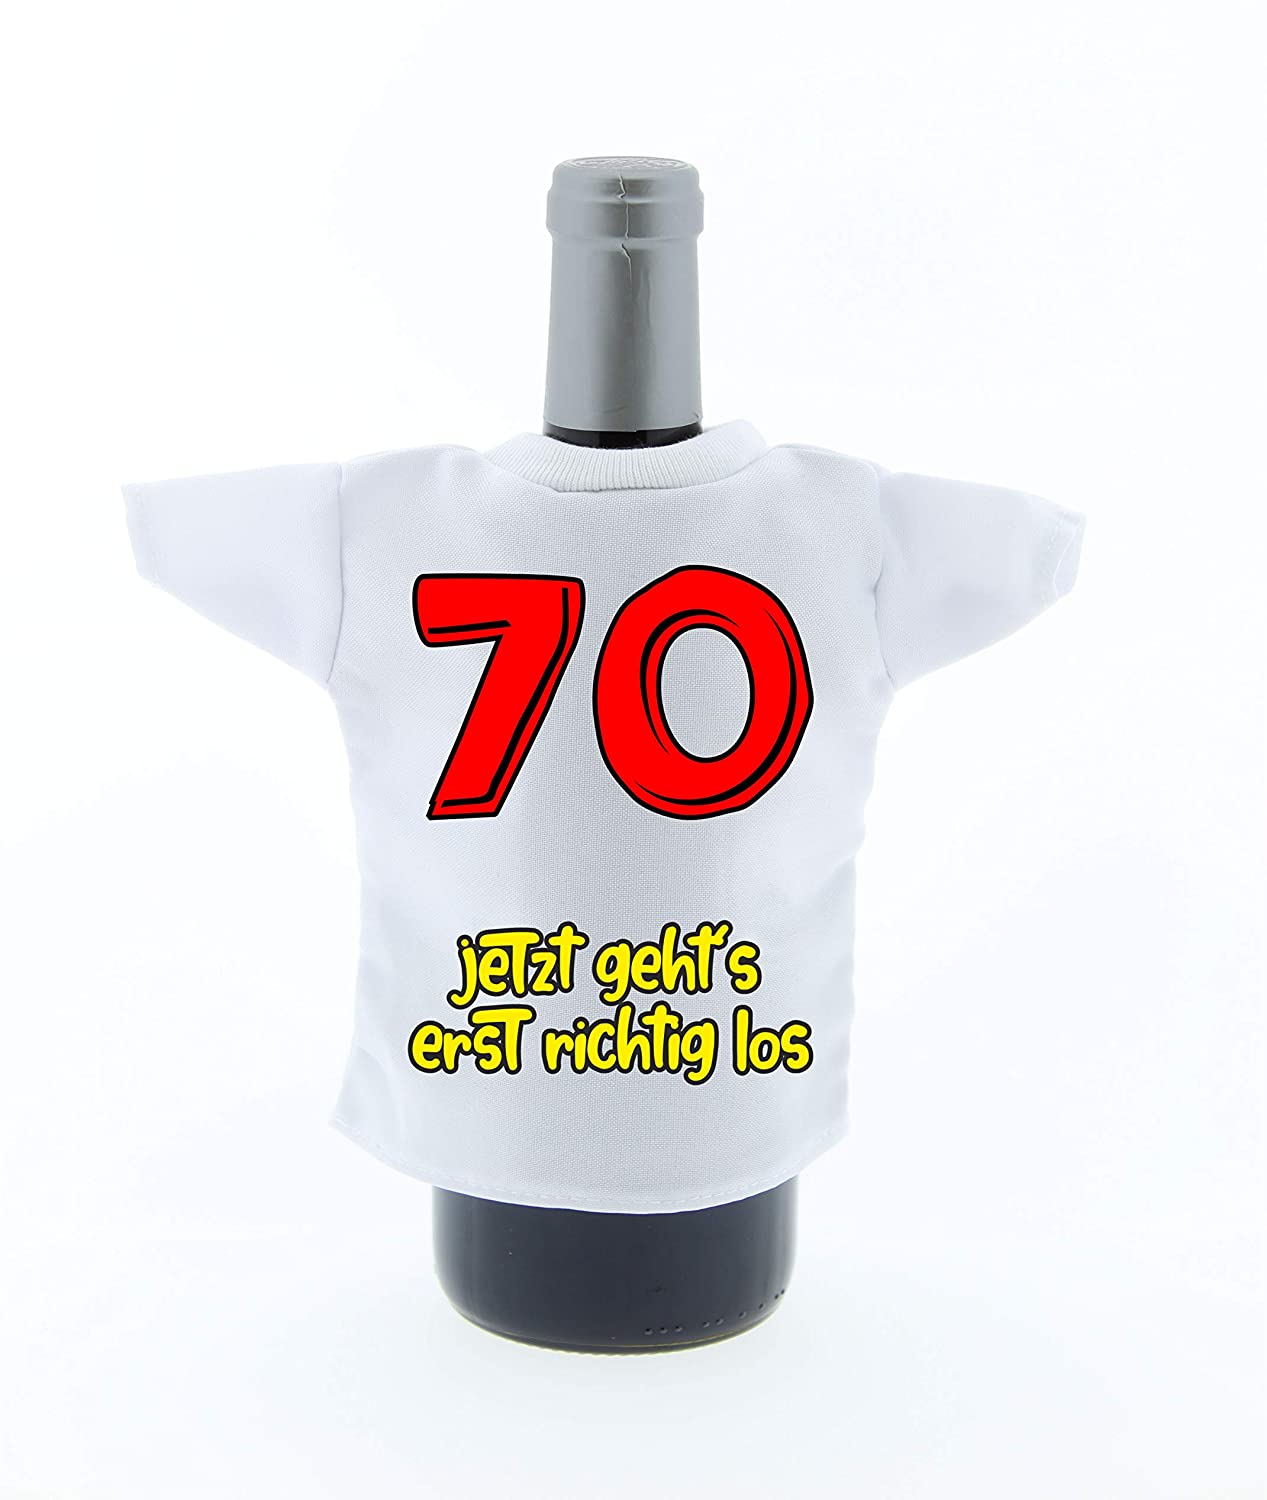 Flaschen Mini Tshirt Dekoration zum Geburtstag mit Aufdruck 70 jetzt geht es erst richtig los